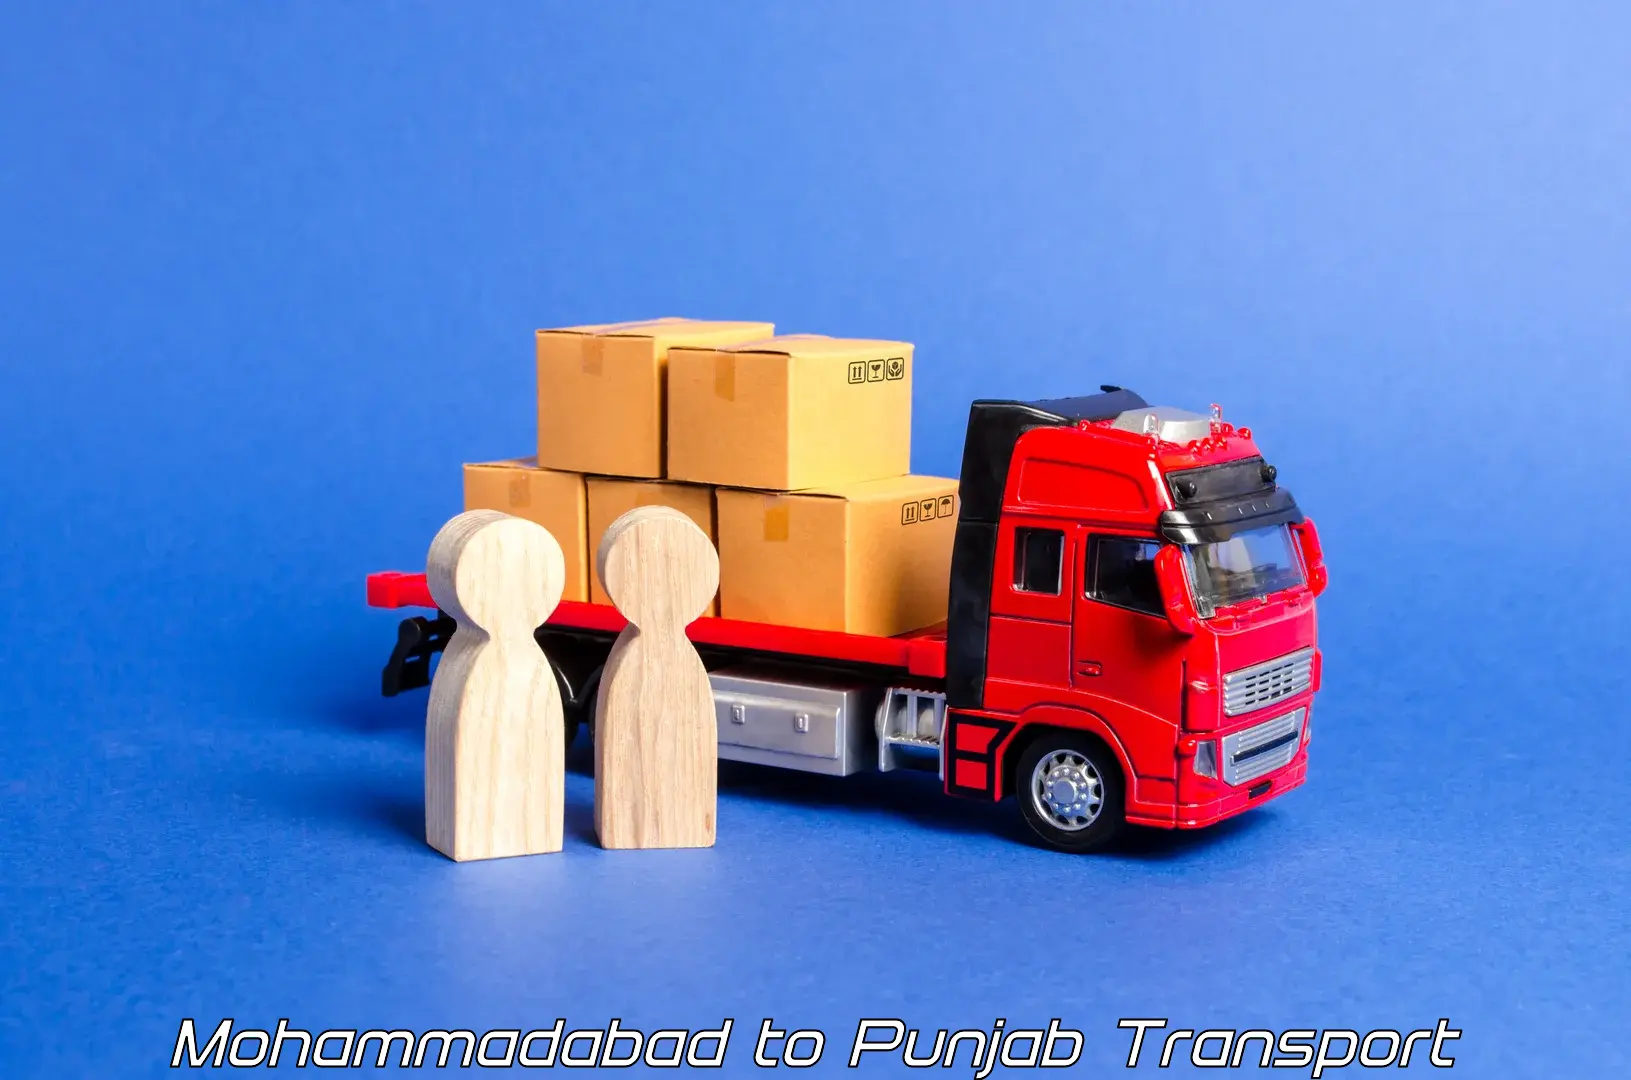 Luggage transport services Mohammadabad to Punjab